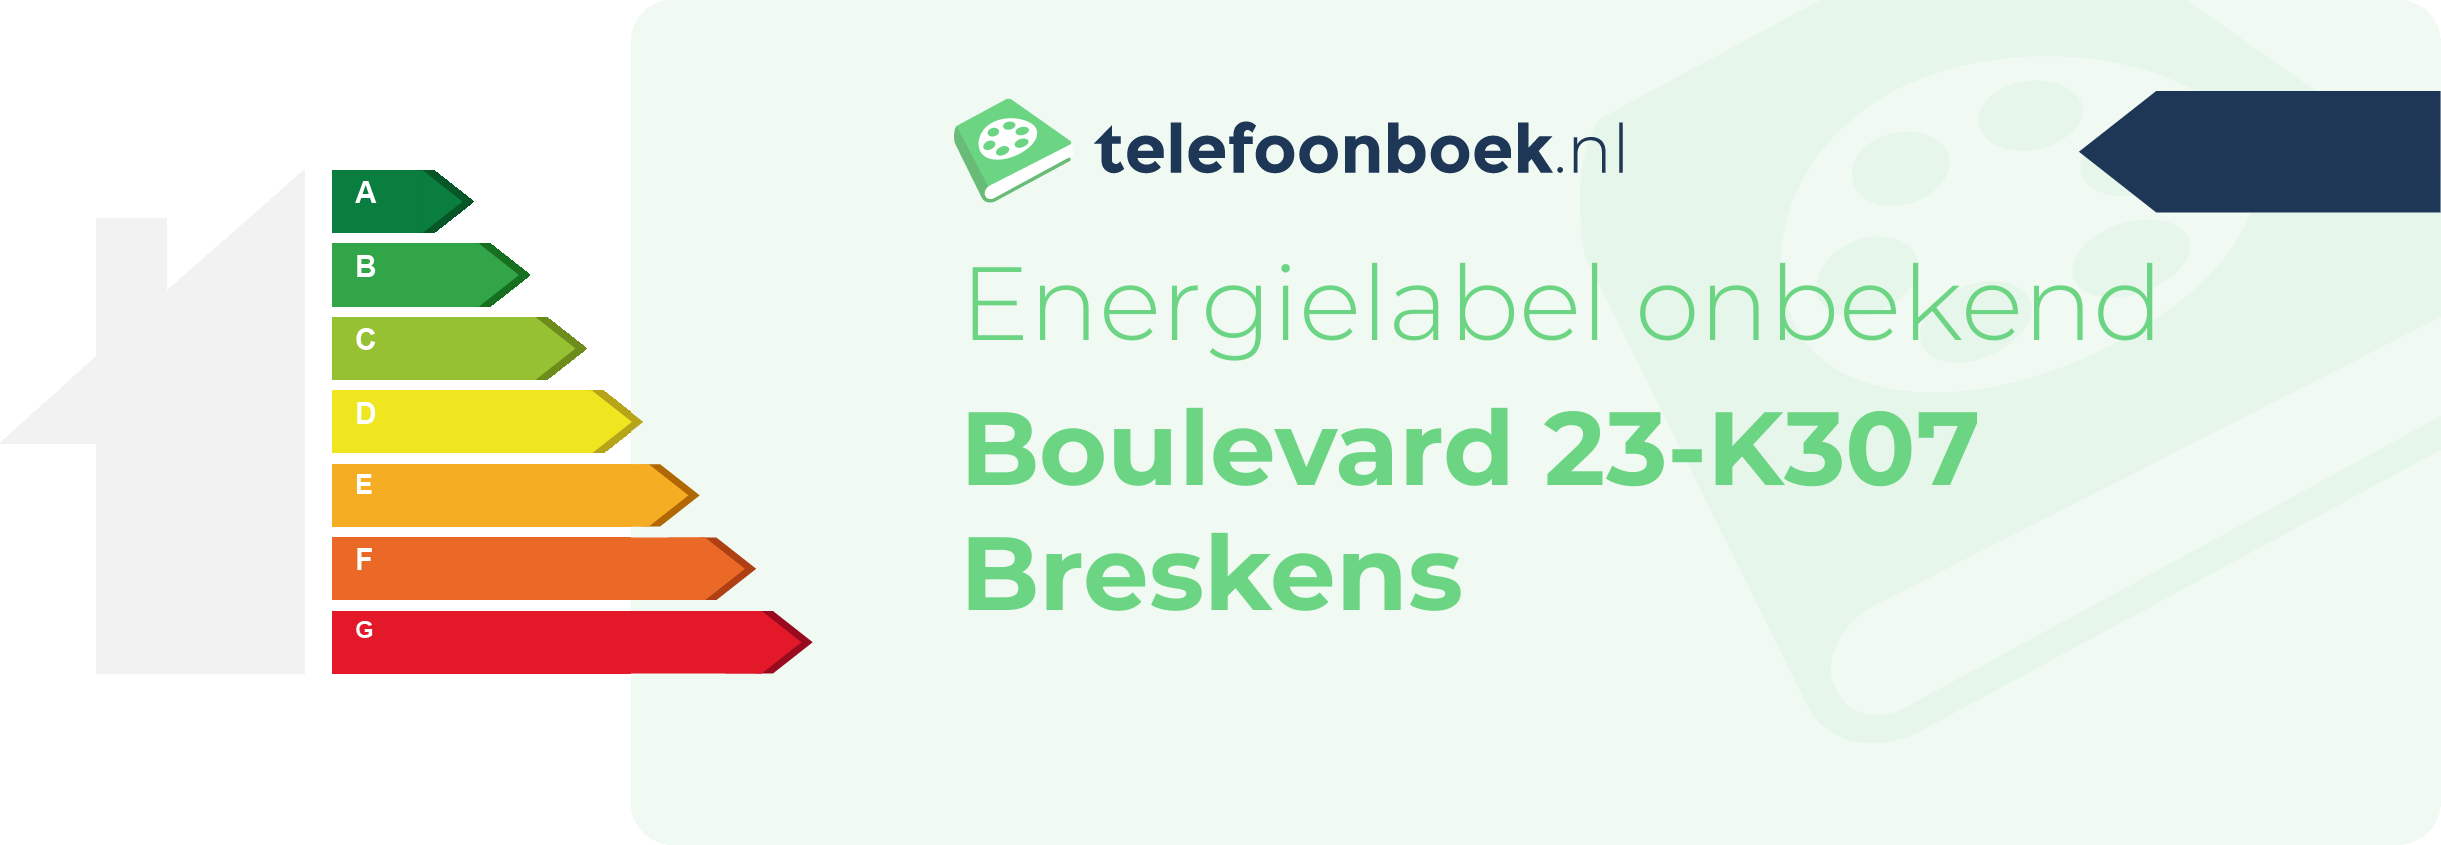 Energielabel Boulevard 23-K307 Breskens